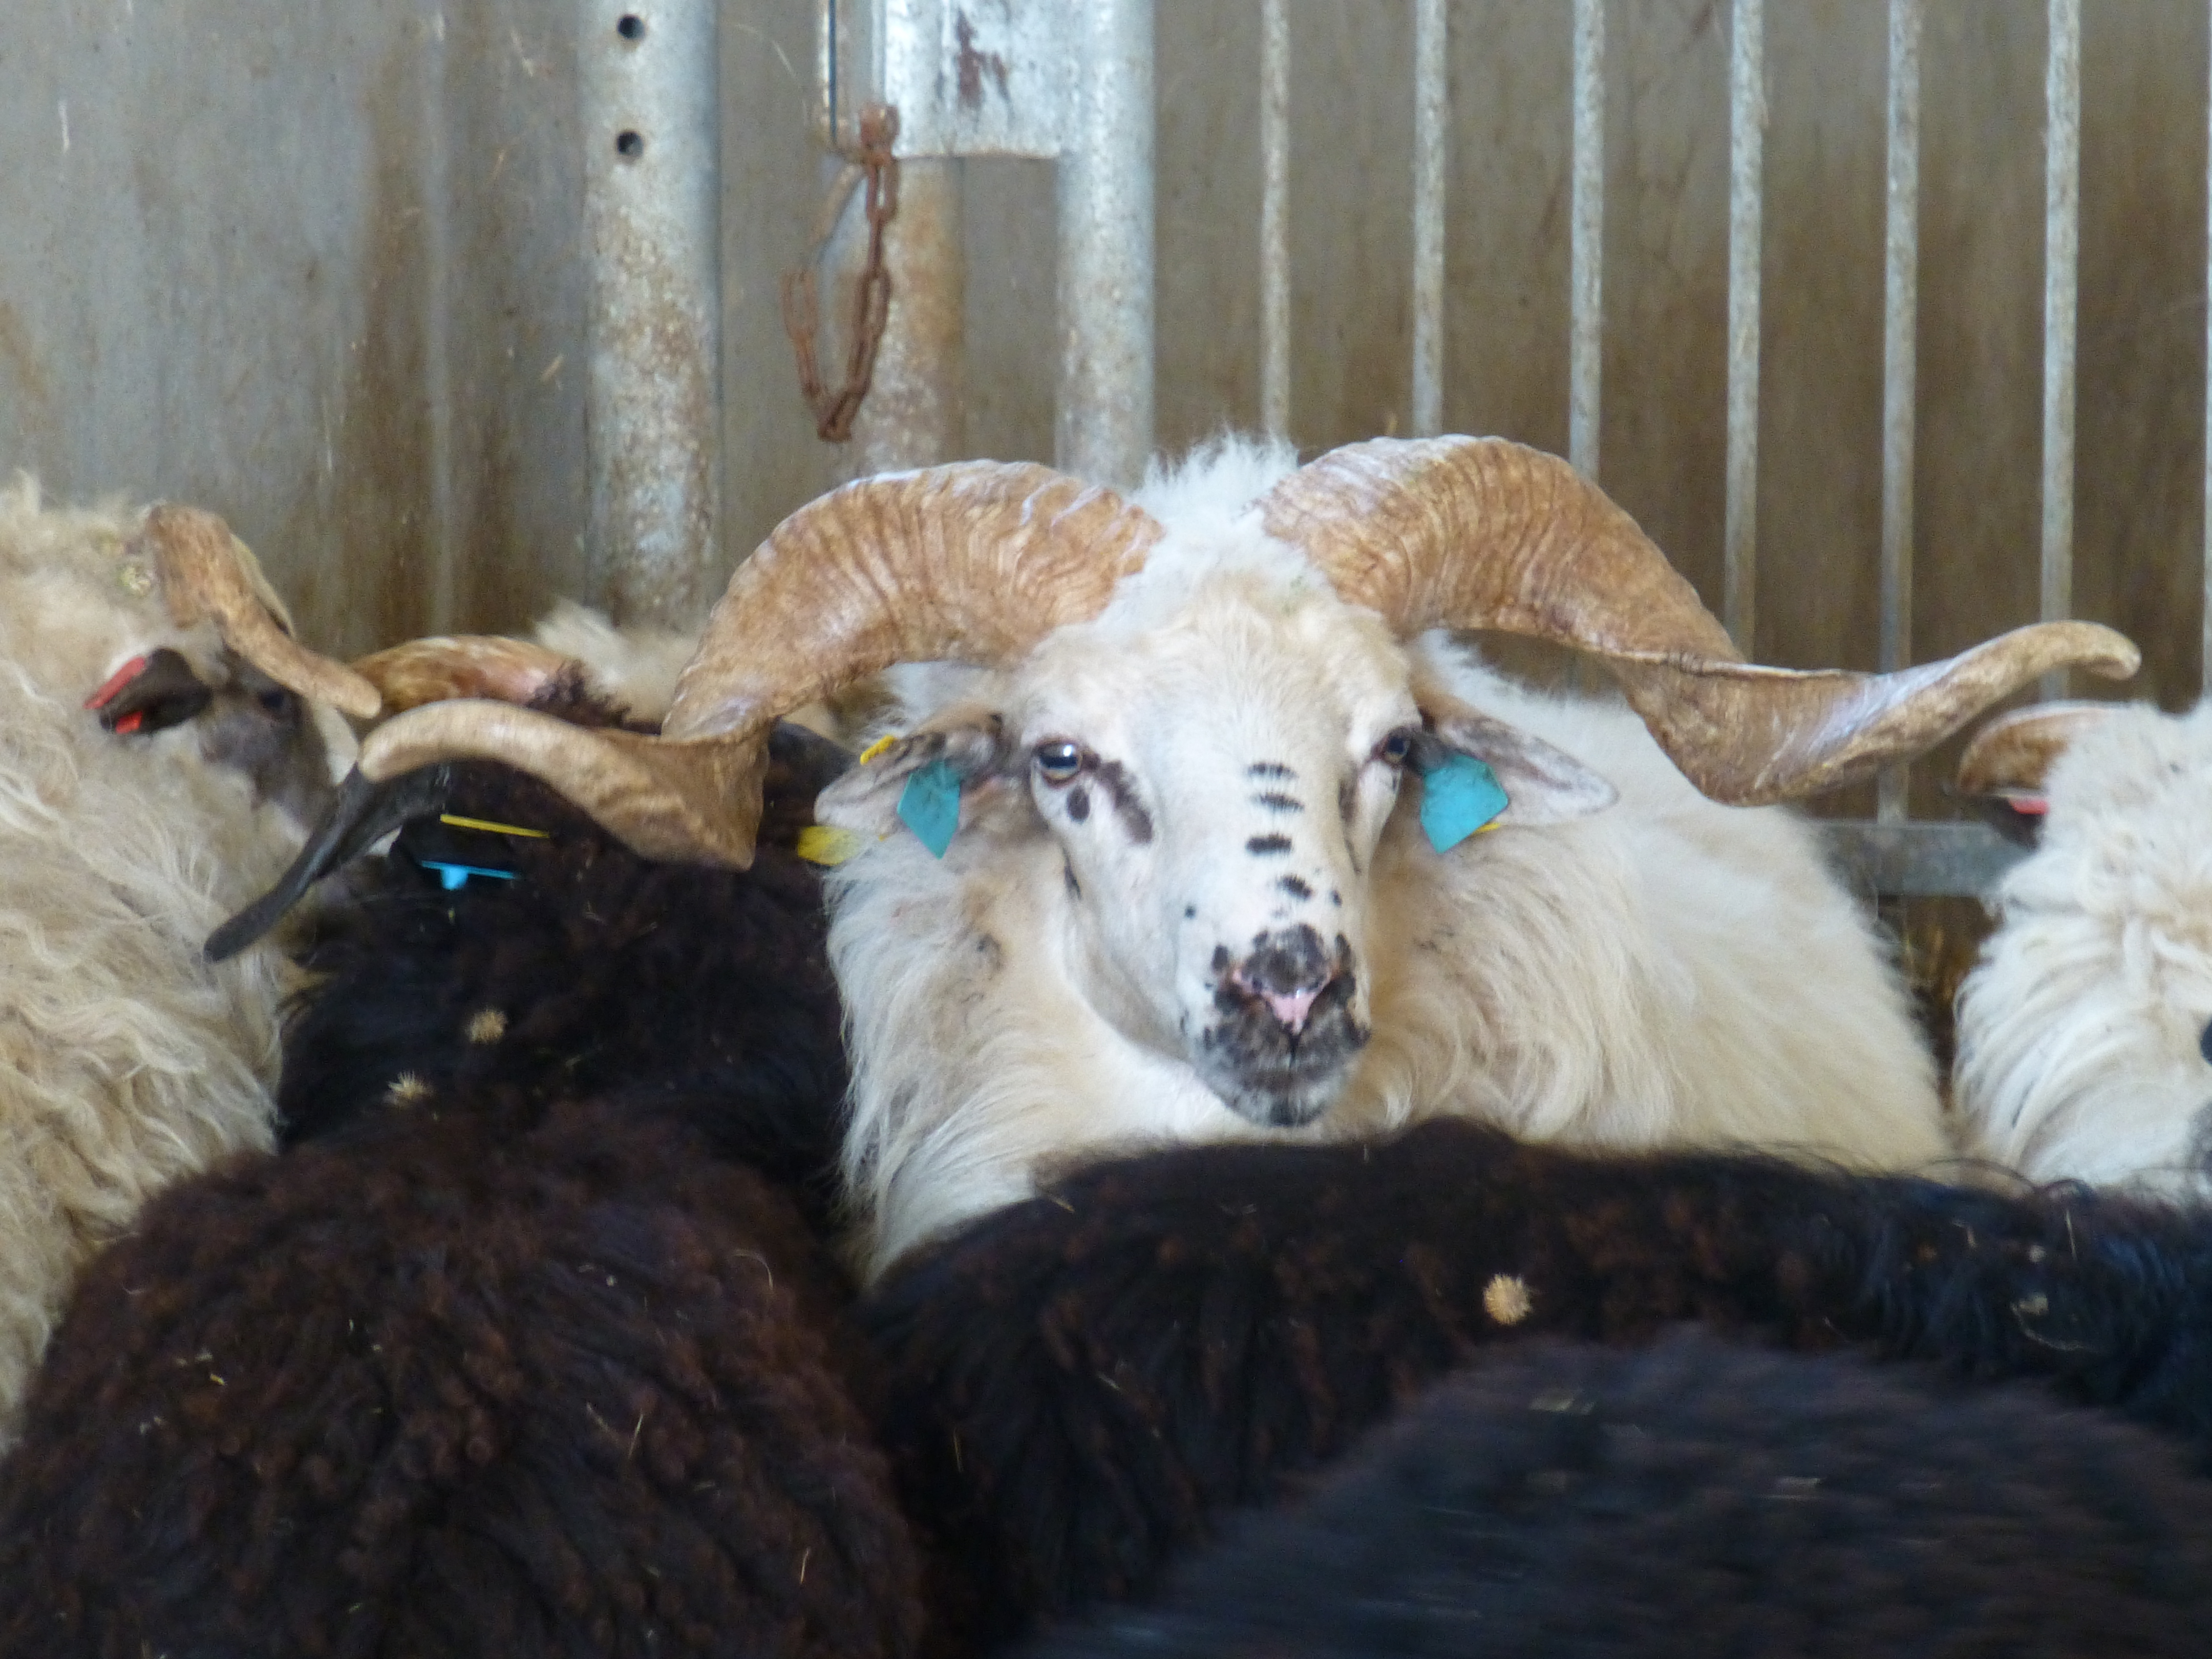 Native Wallachian sheep of Slovakia, photo found here